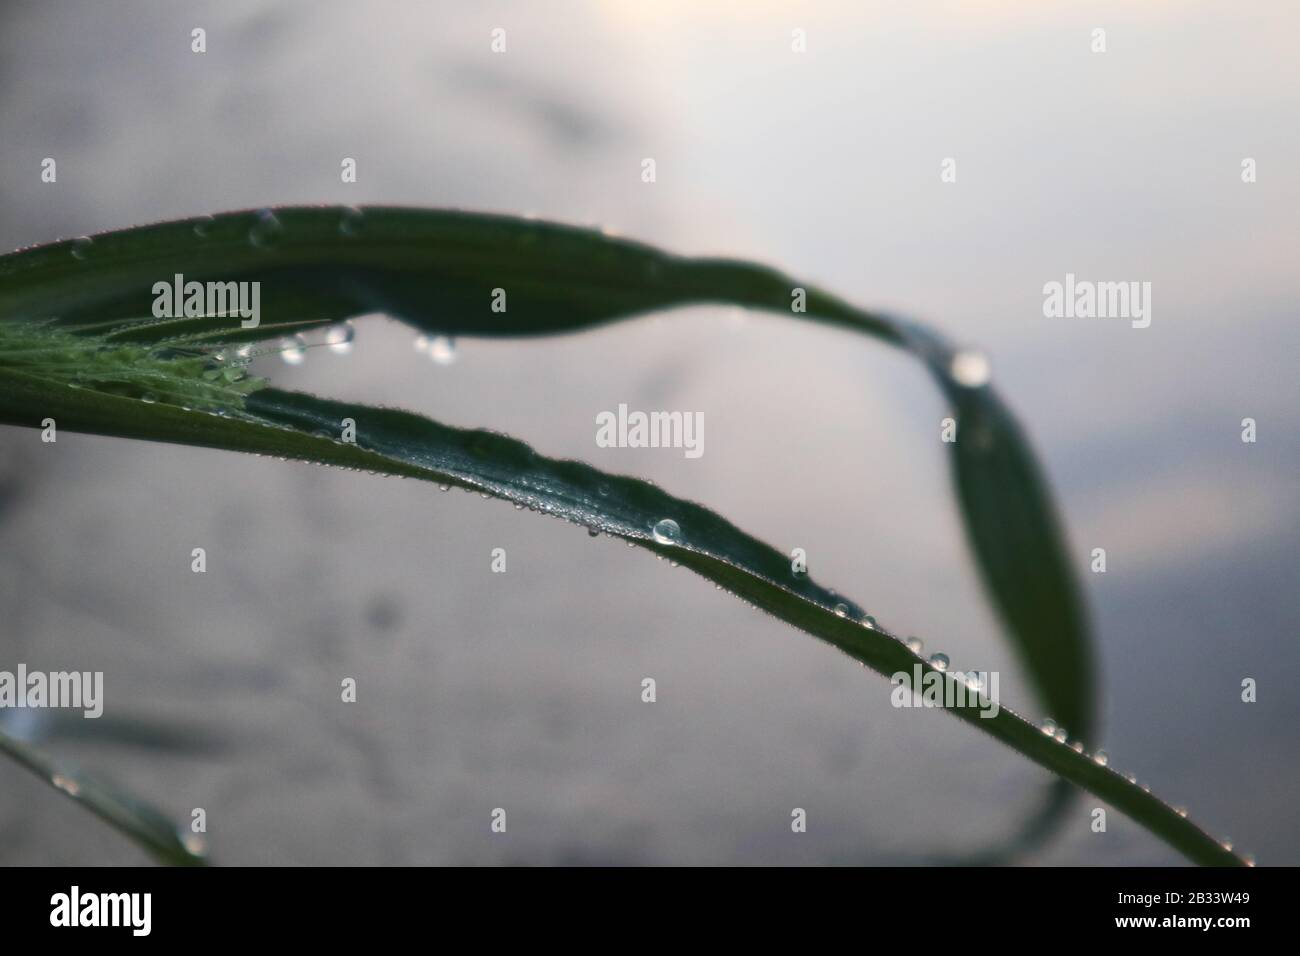 Gras-Wasser lässt morgendliche Reinheit nahe Morgenröte Natur reines Leben fallen Stockfoto